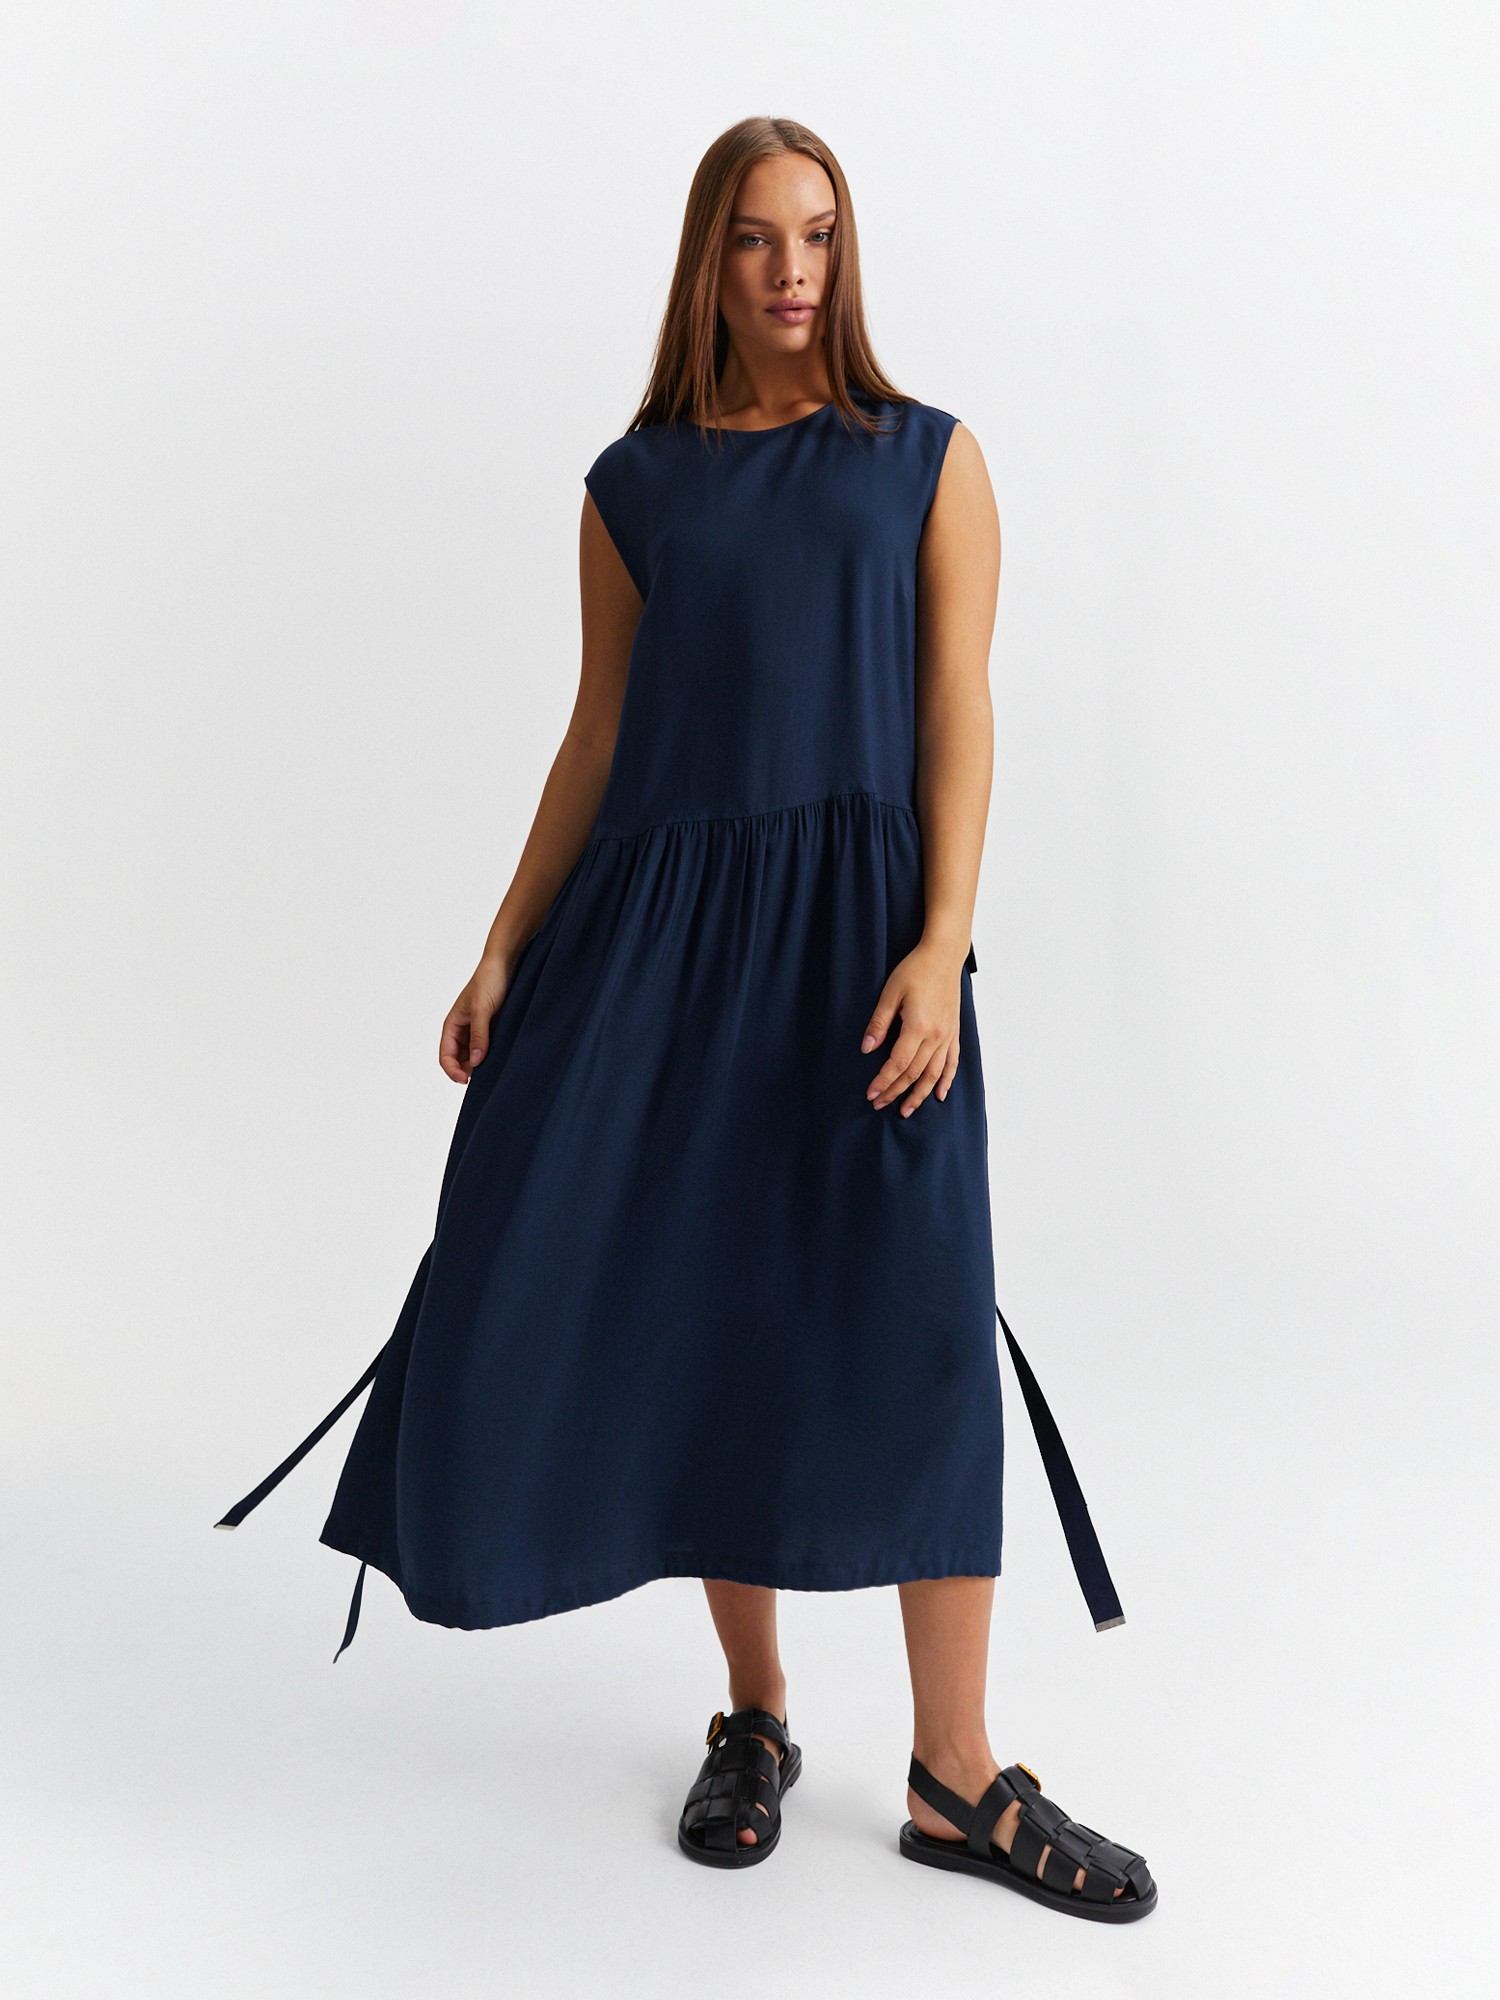 Платье с накладными карманами LALIS DR0724, цвет темно-синий, размер 56